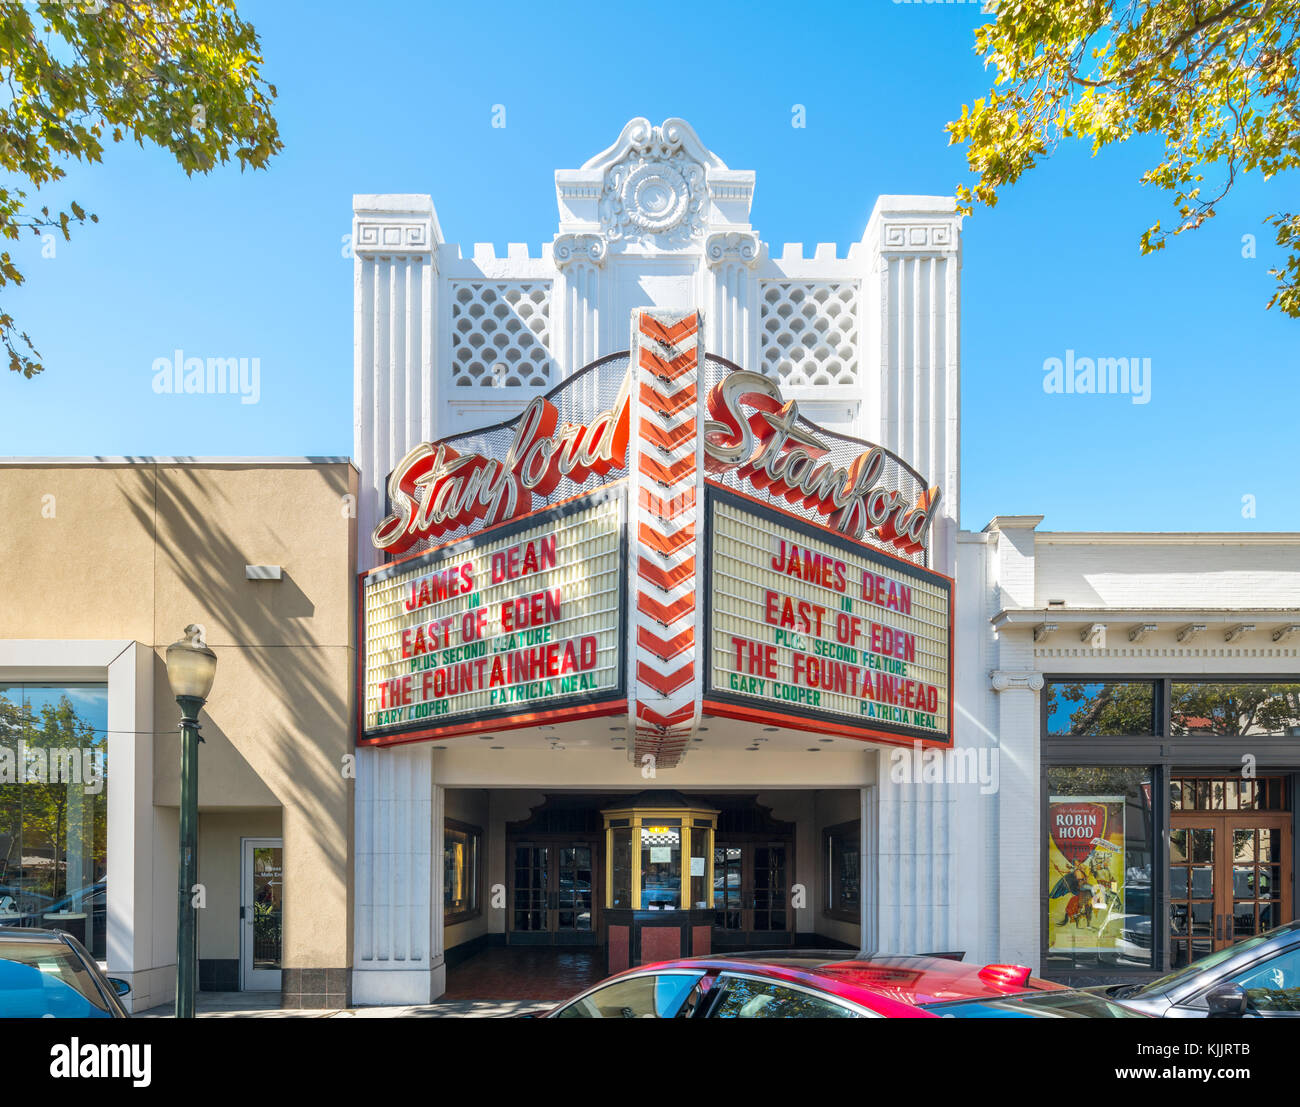 Ripristinato 1925 Palo Alto Stanford Movie Theater mostra a est di Eden con James Dean e la sorgente di Ayn Rand con Gary Cooper. Foto Stock